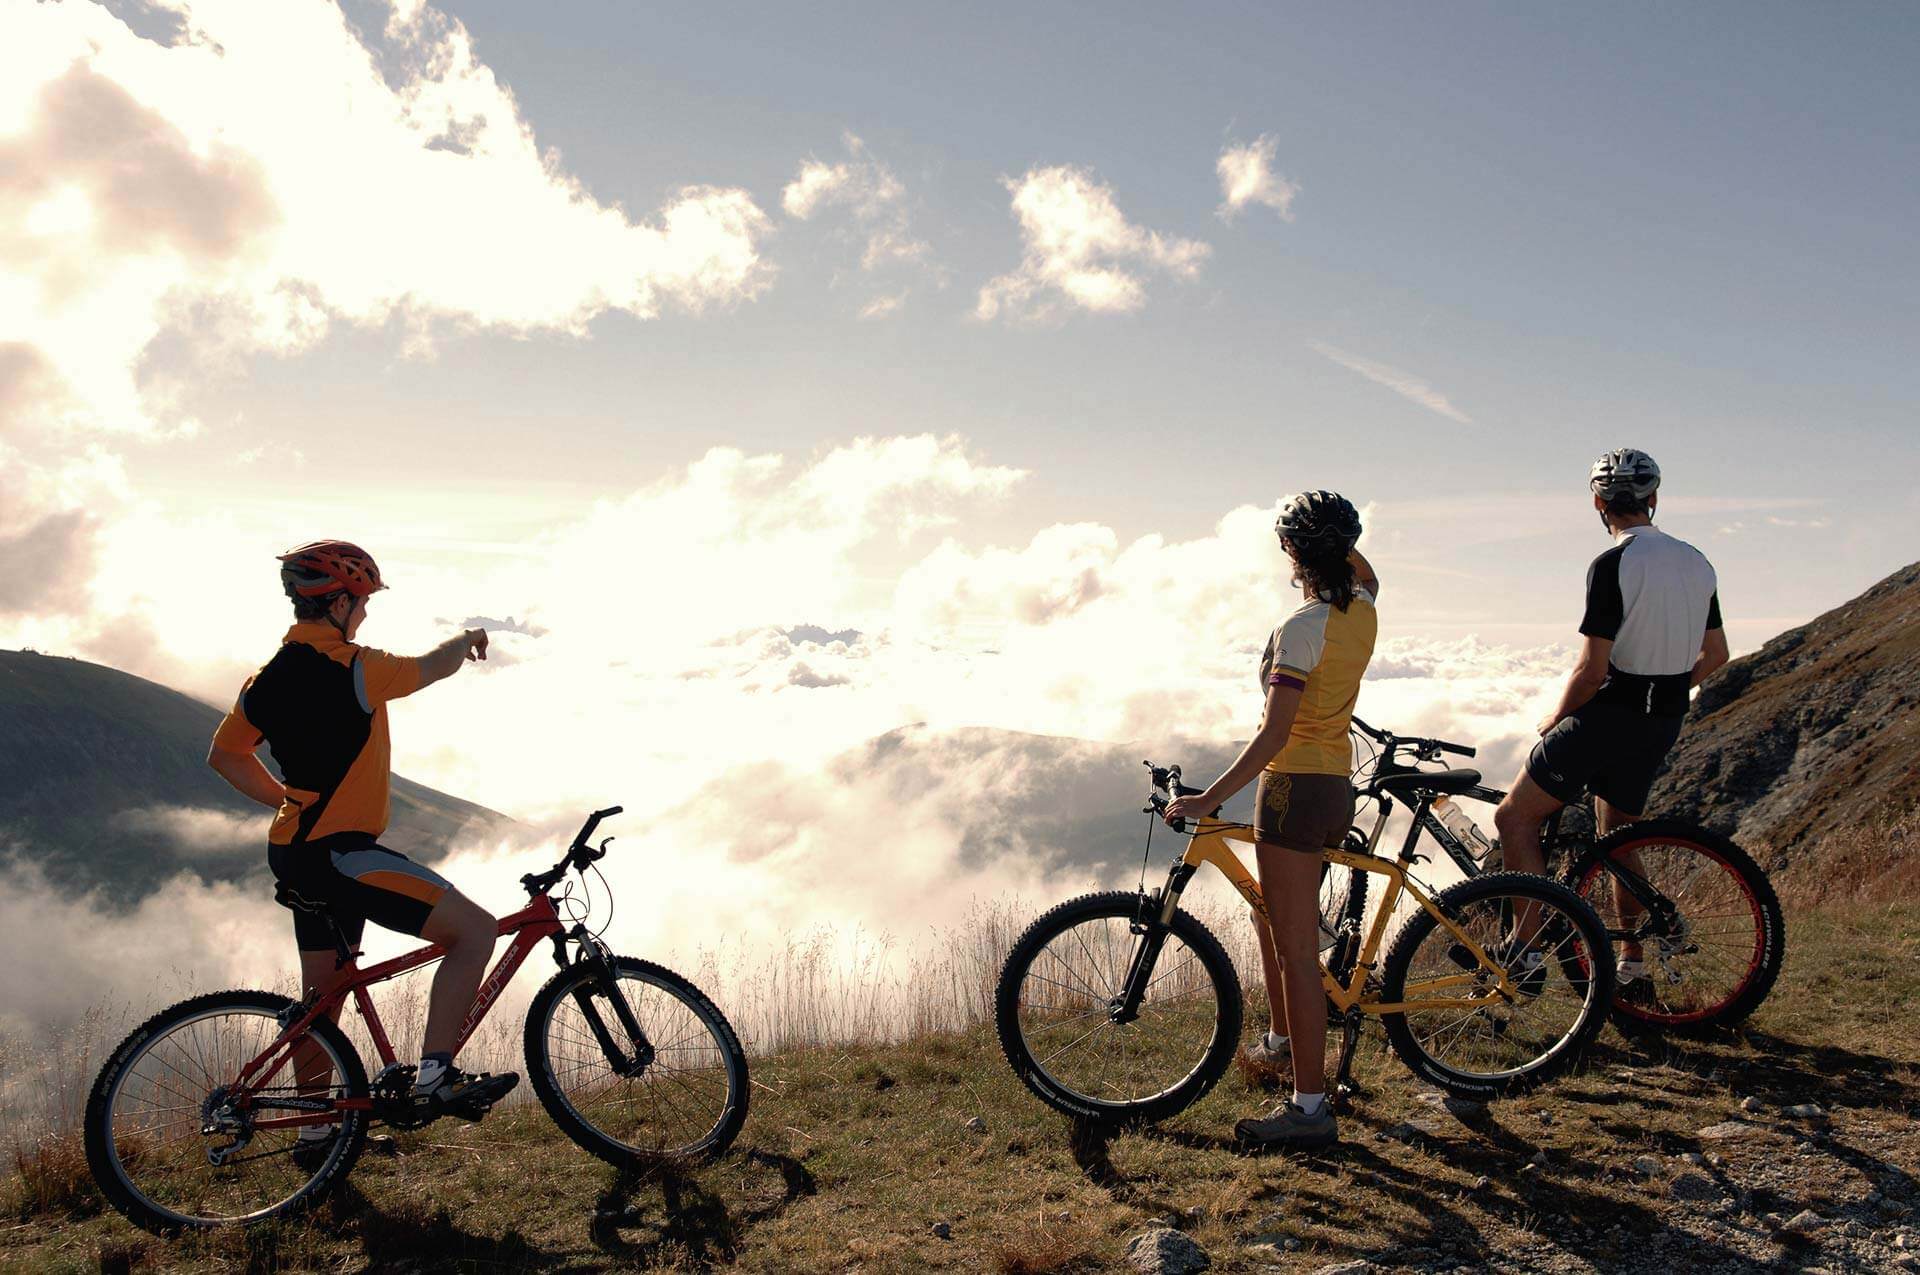 Cycling and mountain biking